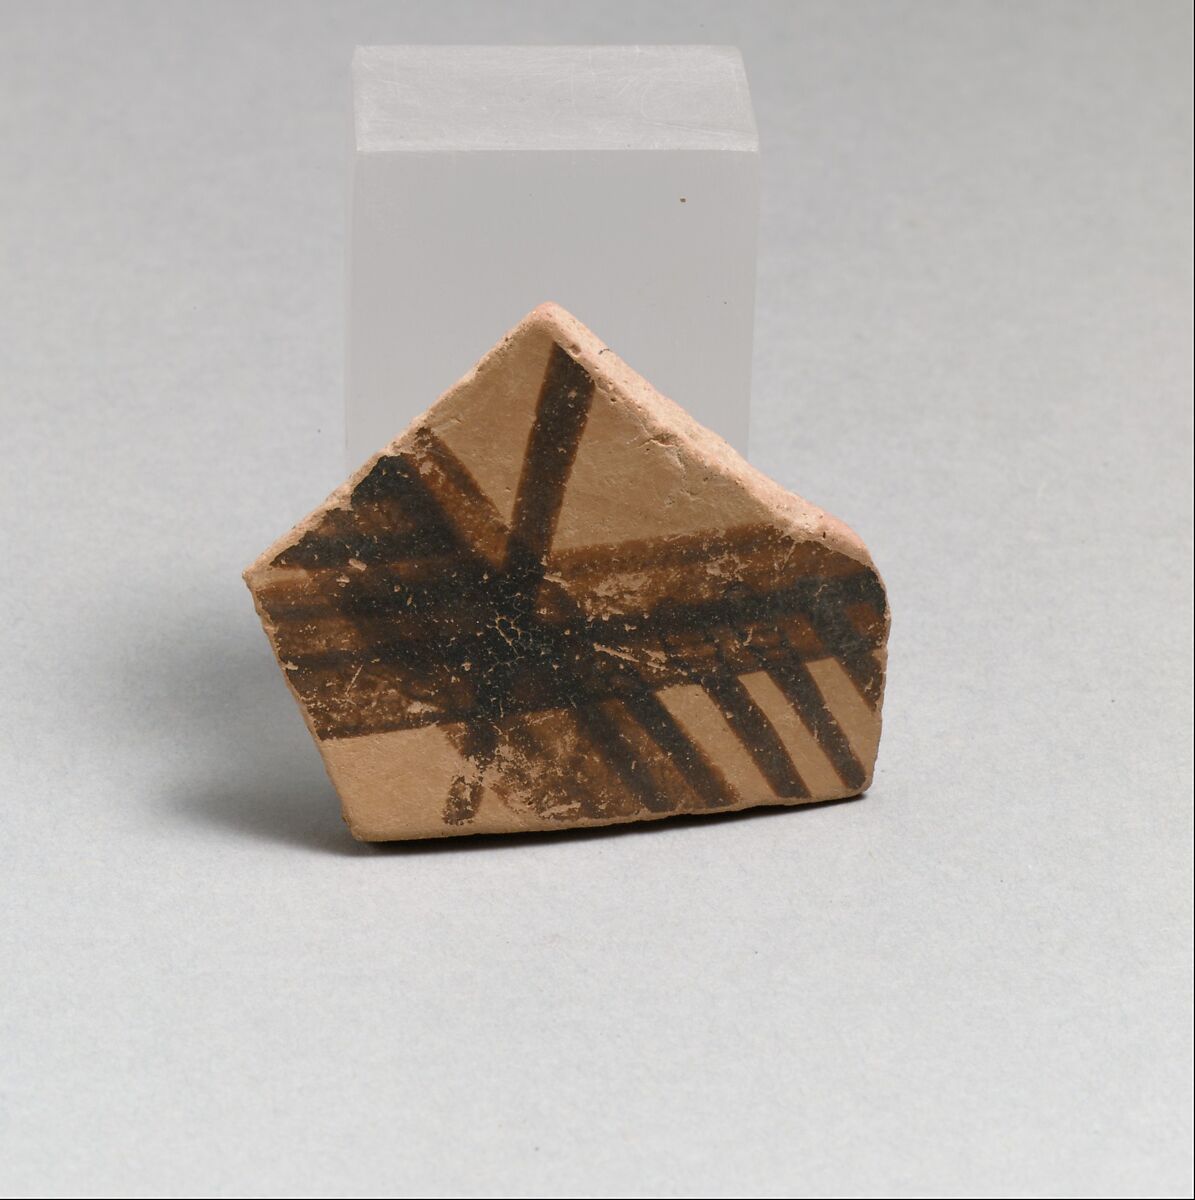 Terracotta vessel fragment, Terracotta, Greek Neolithic 